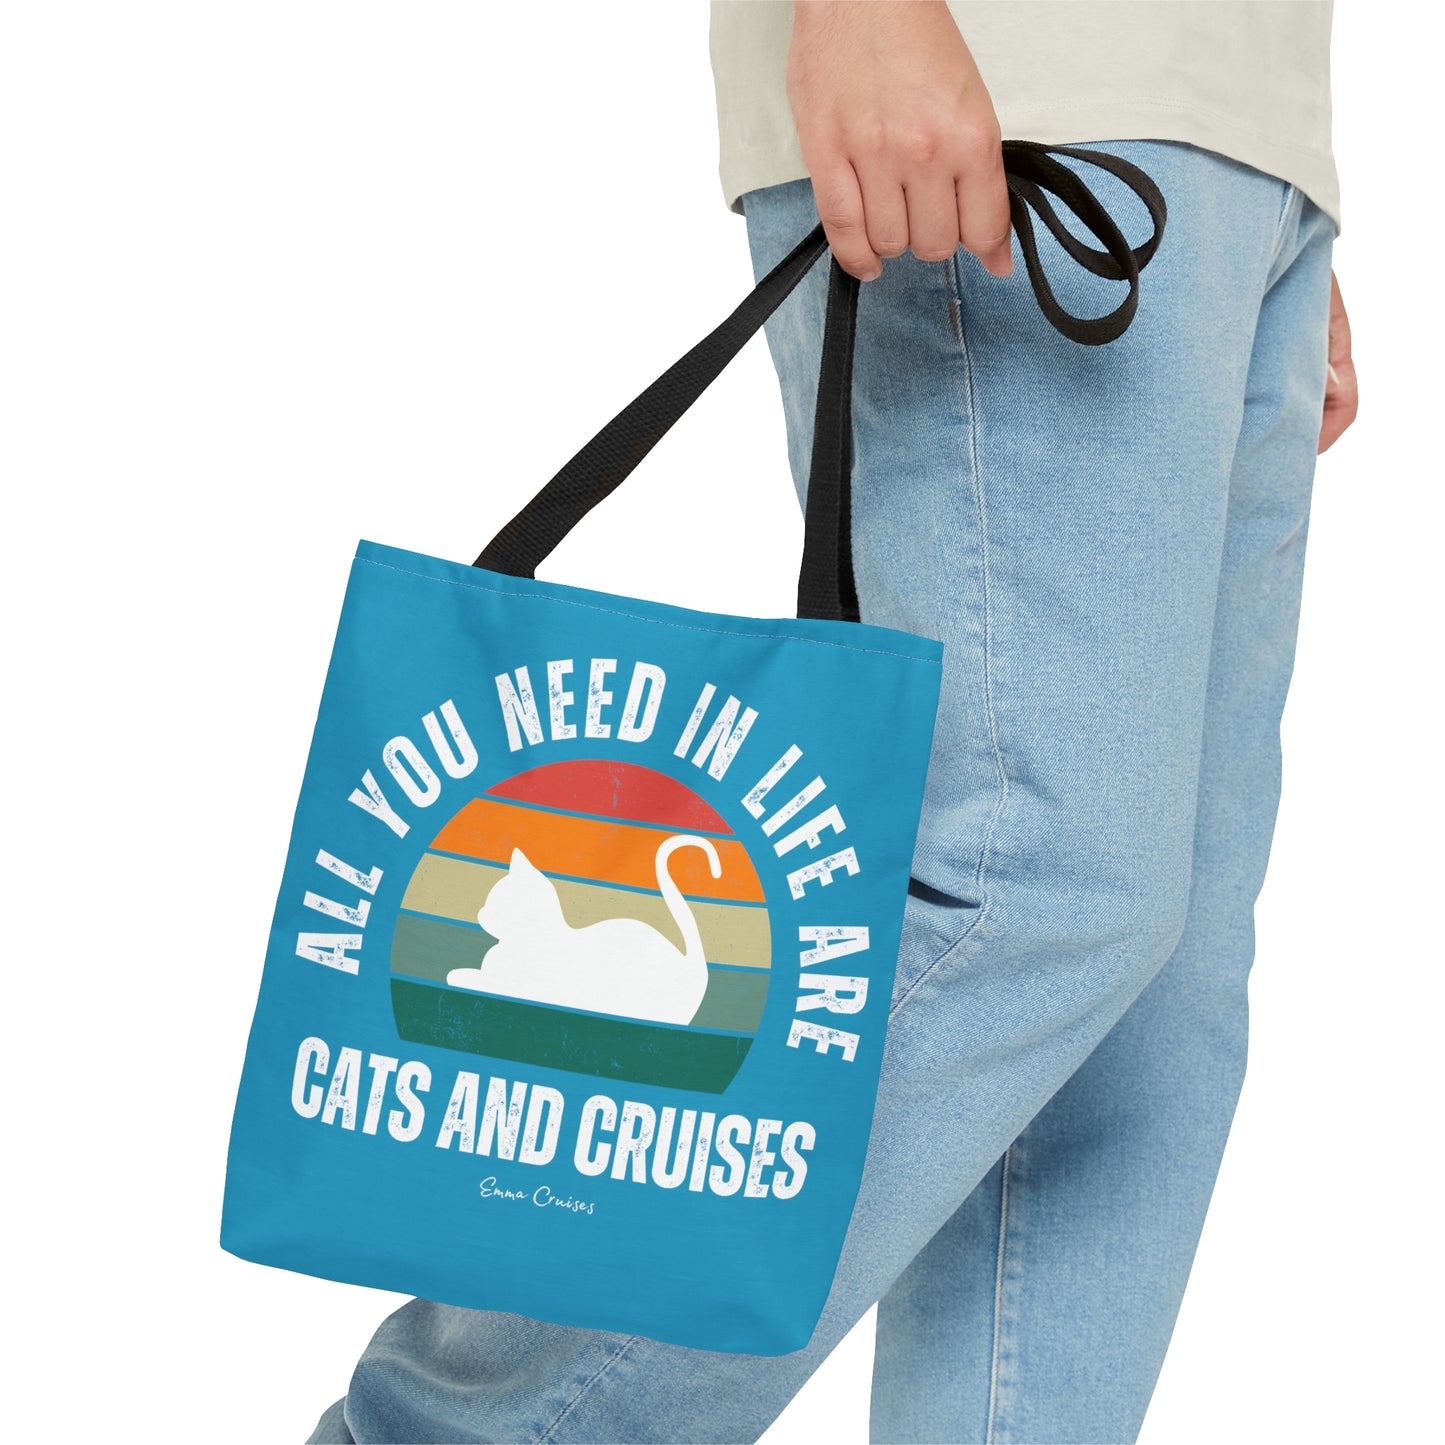 Katzen und Kreuzfahrten - Tasche